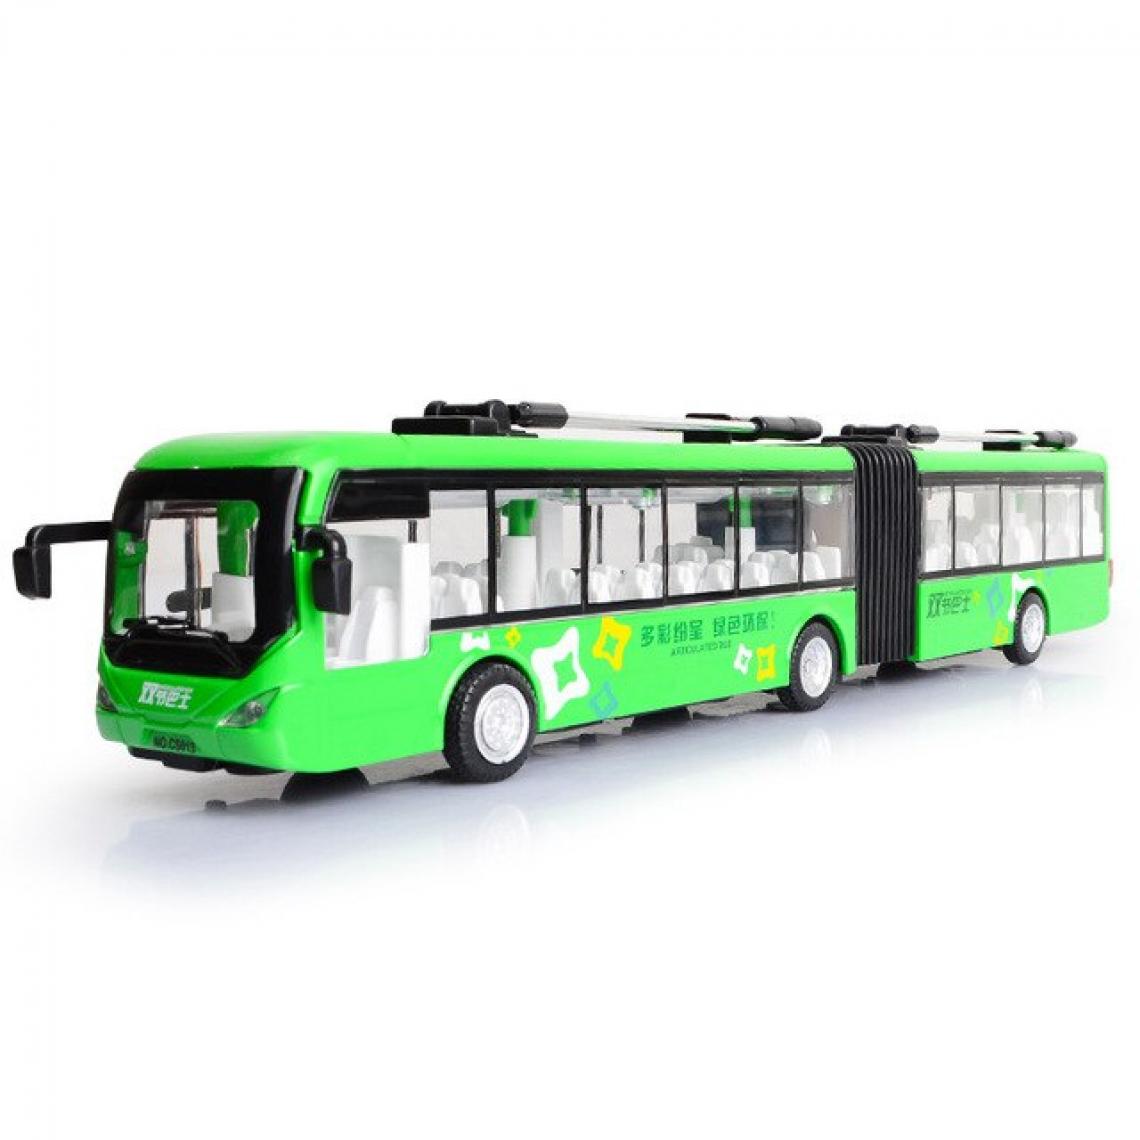 Universal - 1: 32 Alloy pull back double bus hautement simulé bus urbain modèle véhicule métal moulé sous pression scintillant musique garçon jouets Livraison gratuite | Voitures jouets moulés sous pression(Vert) - Voitures